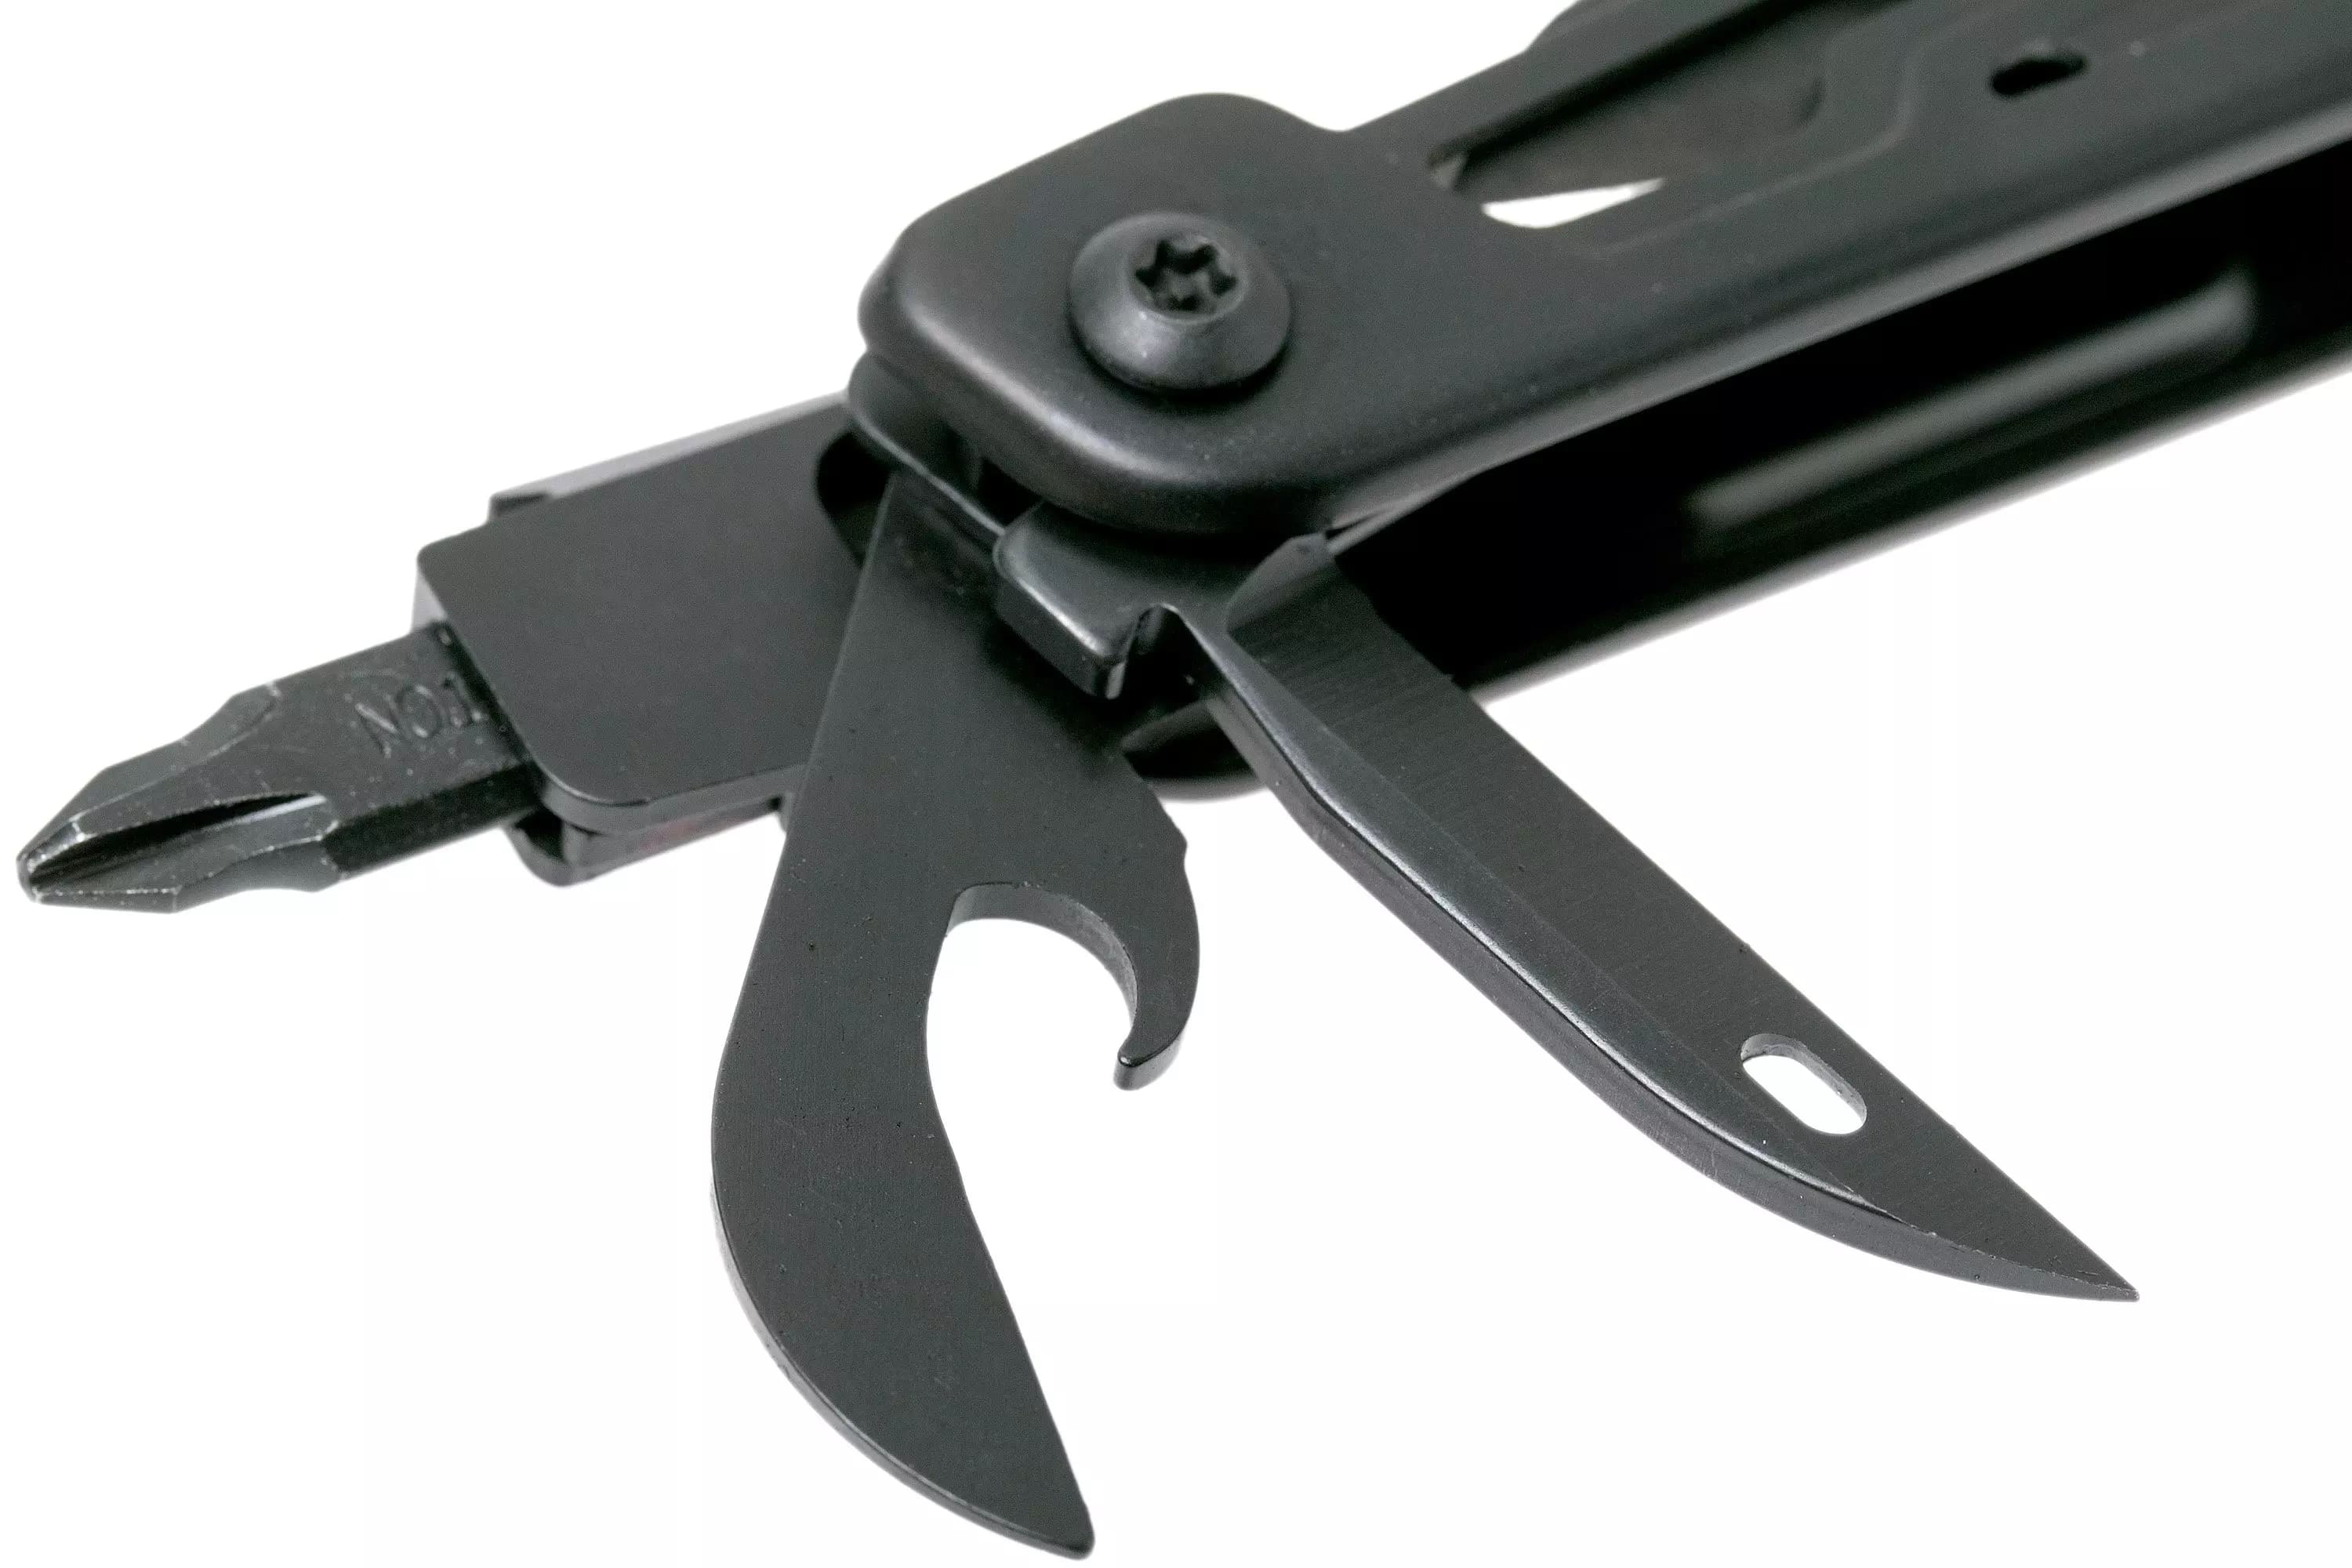 Повнорозмірний мультиінструмент Leatherman Signal з шилом з вушком та гвинтовою петлею, консервним ножем та відкривалкою для пляшок